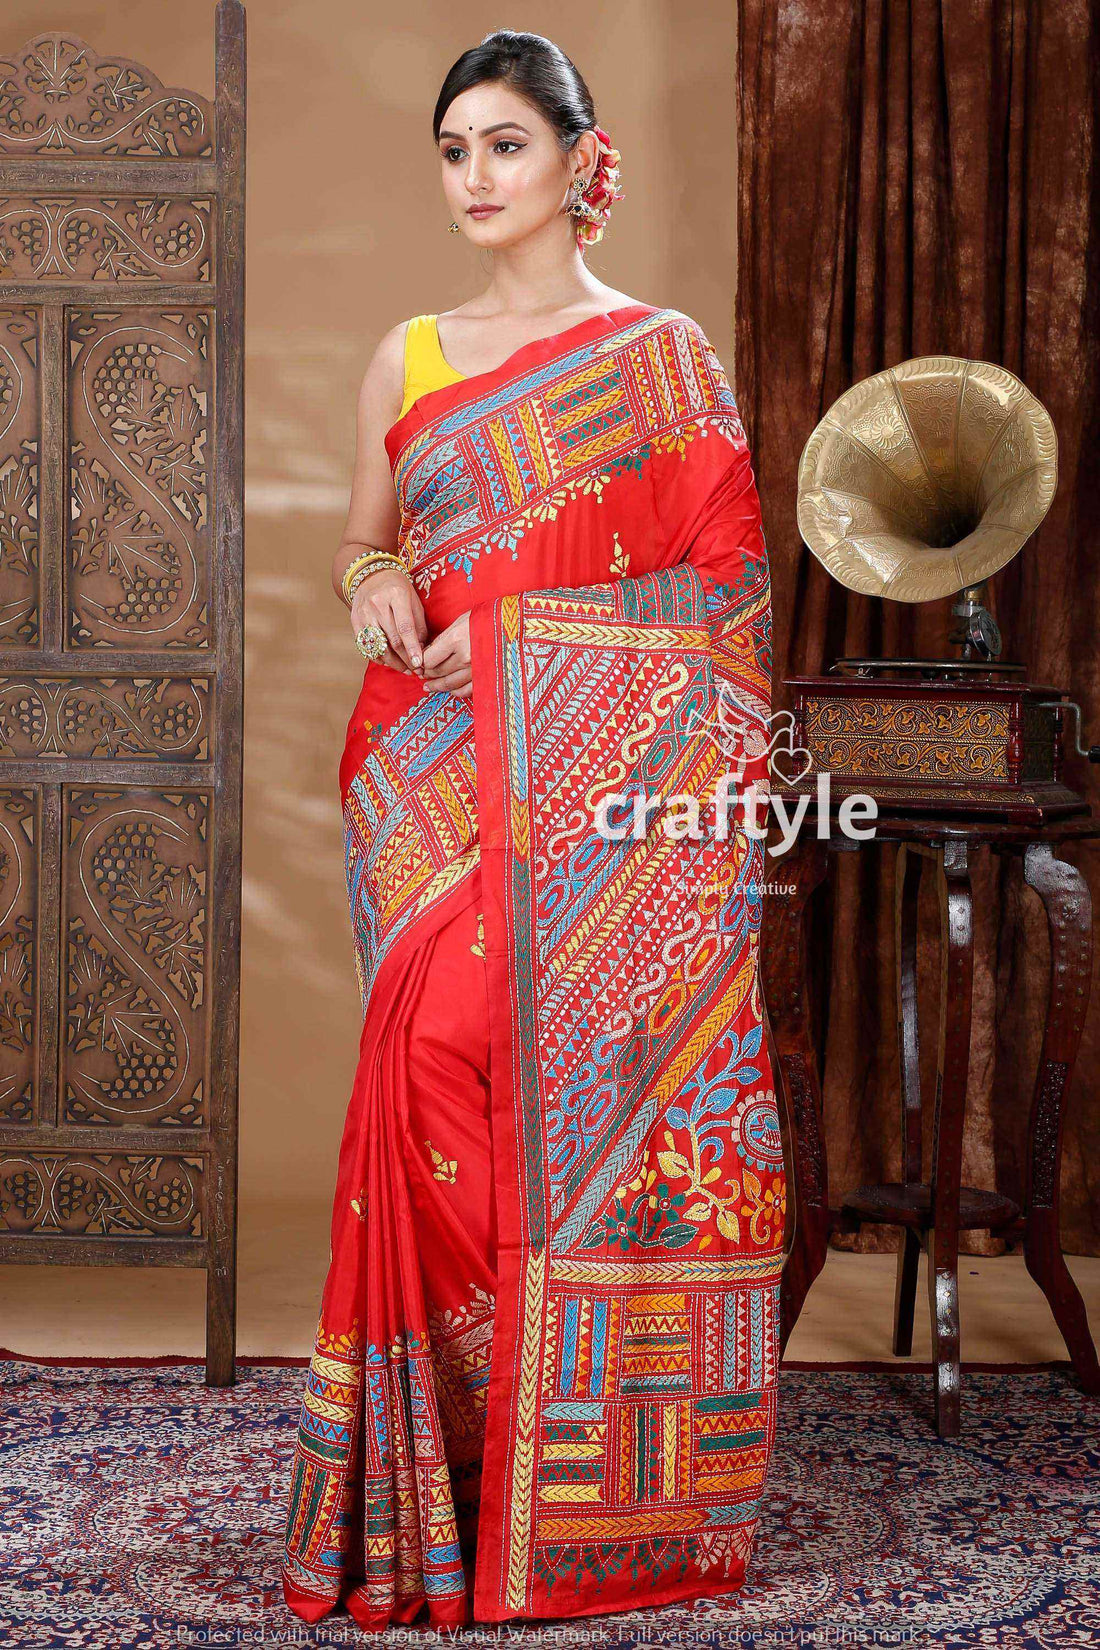 Candy Red Silk Kantha Stitch Saree-Craftyle